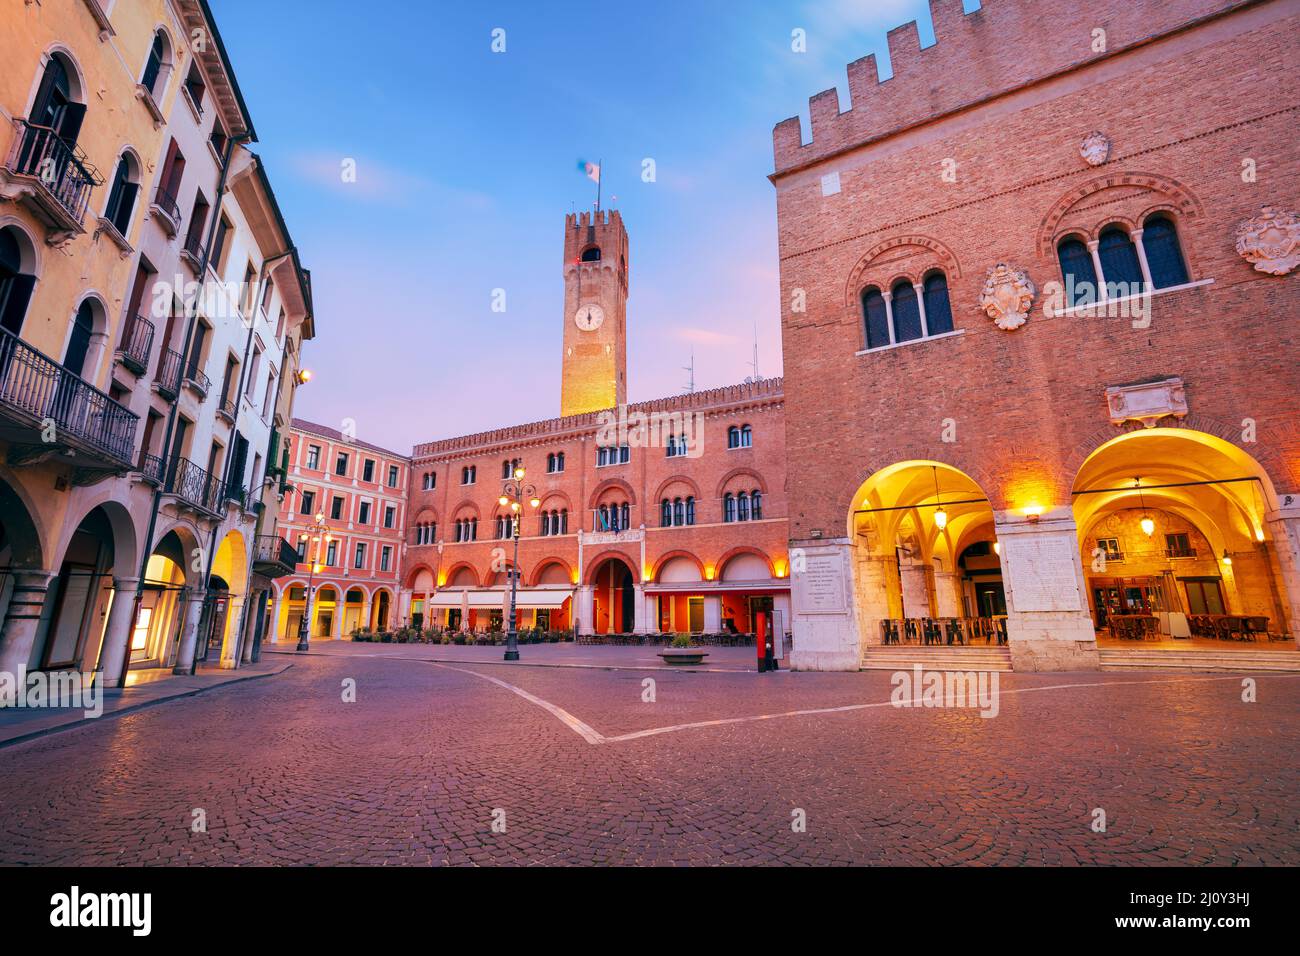 Treviso, Italia. Immagine del centro storico di Treviso con la piazza antica all'alba. Foto Stock